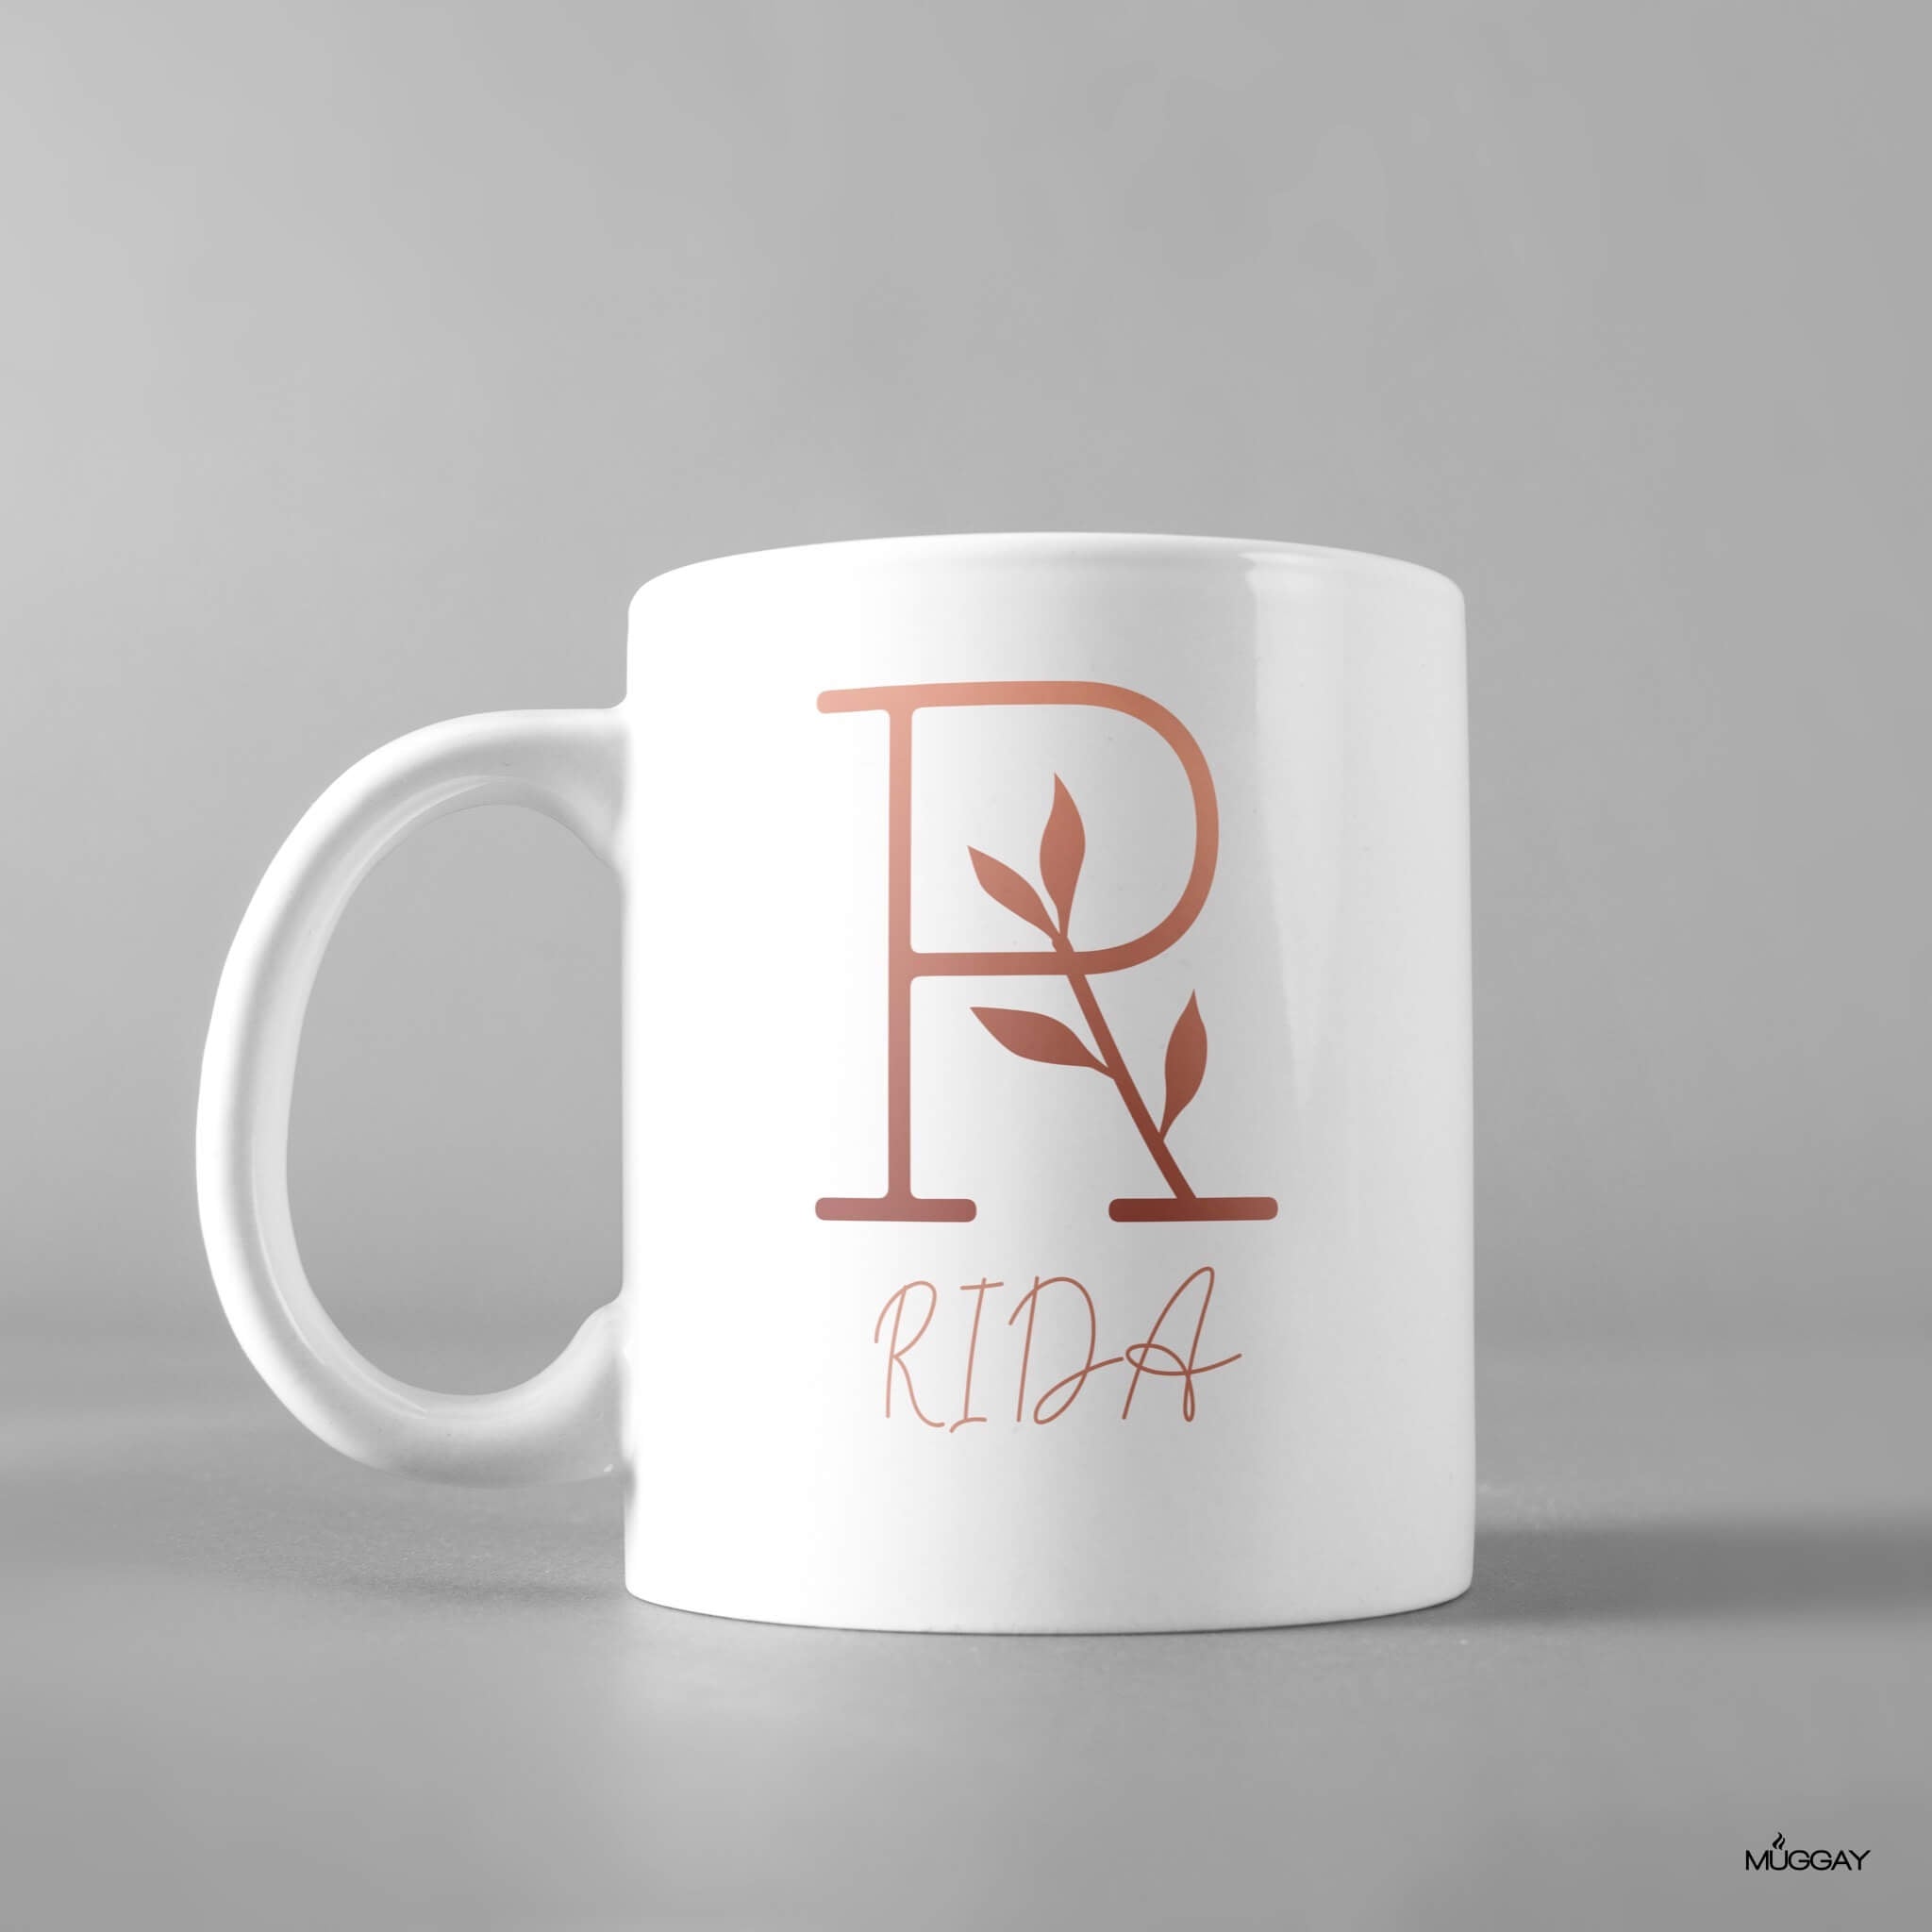 Simple Leafy Design Monogram Mug